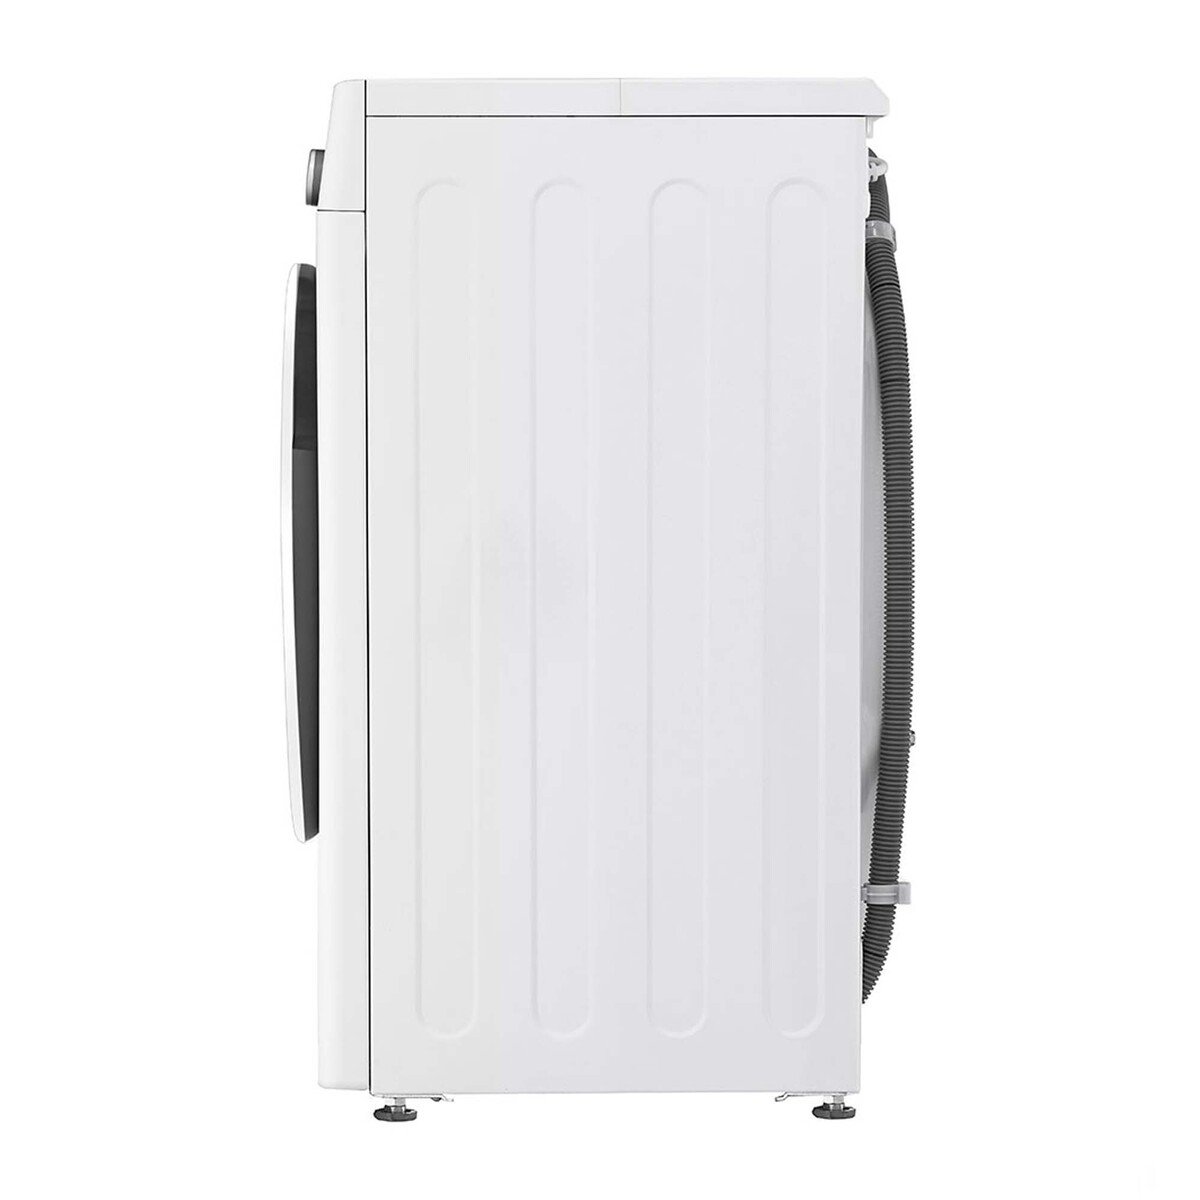 LG Front Load Washing Machine F2V5GYP0W 8.5KG, AI DD™, Steam+™, Bigger Capacity